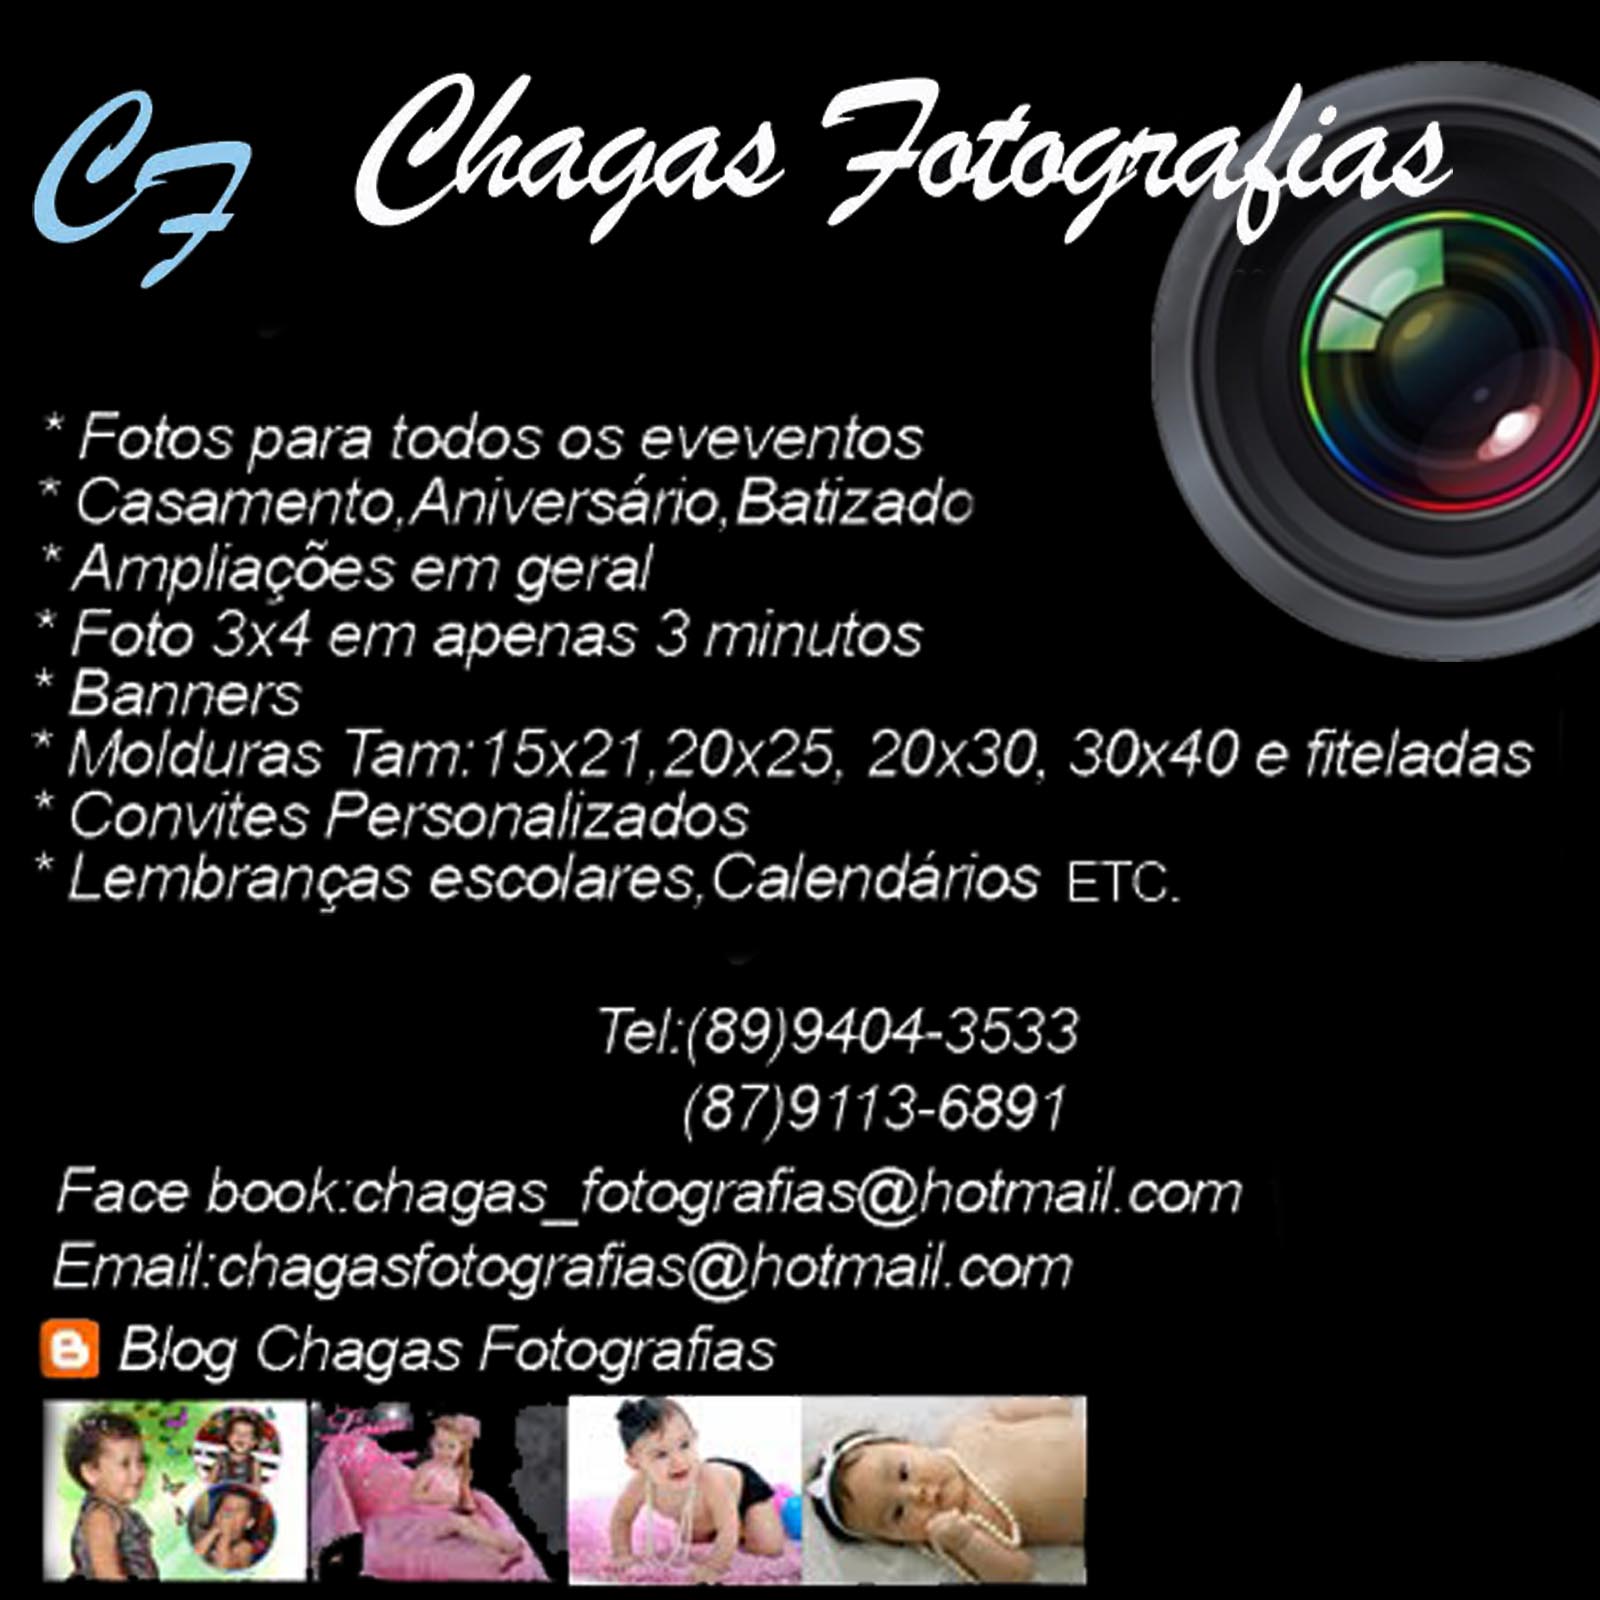 CHAGAS FOTOGRAFIAS